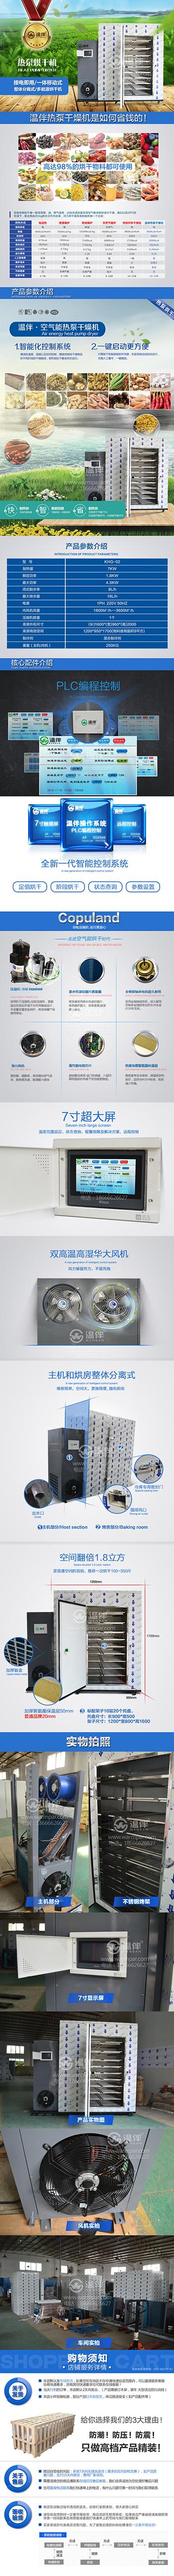 湖南KHG-02腊鱼烘干机 温伴品牌新能源烘干机价格实惠